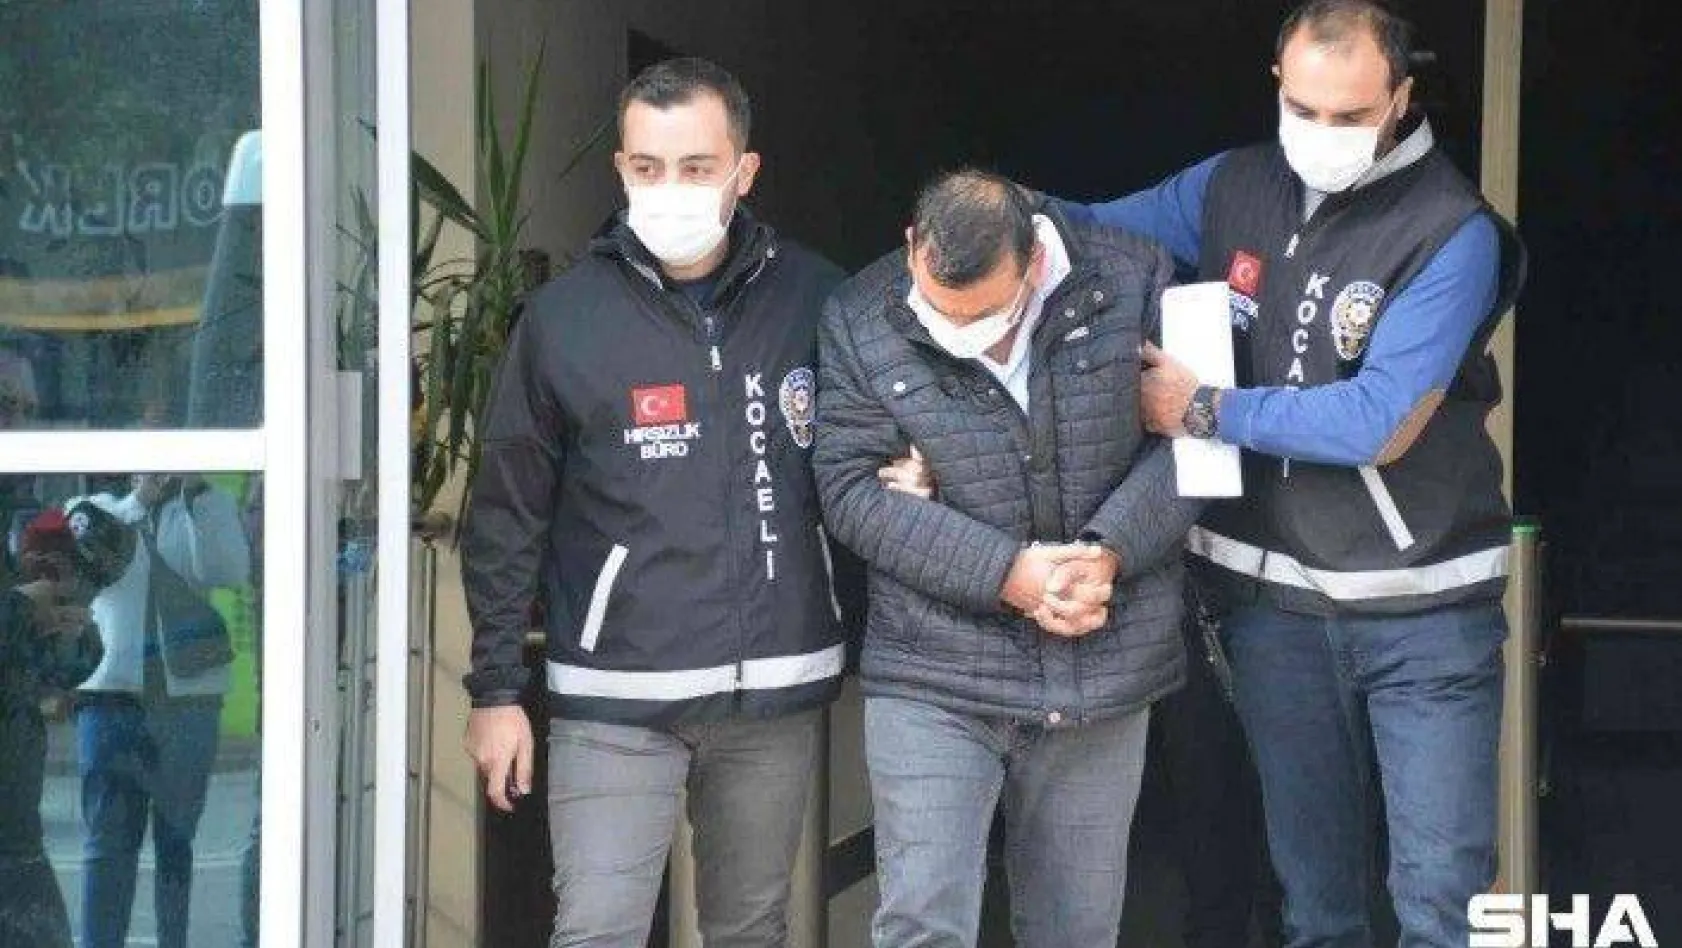 Polisi sürükleyerek yaralayan CHP'li adliyeye sevk edildi